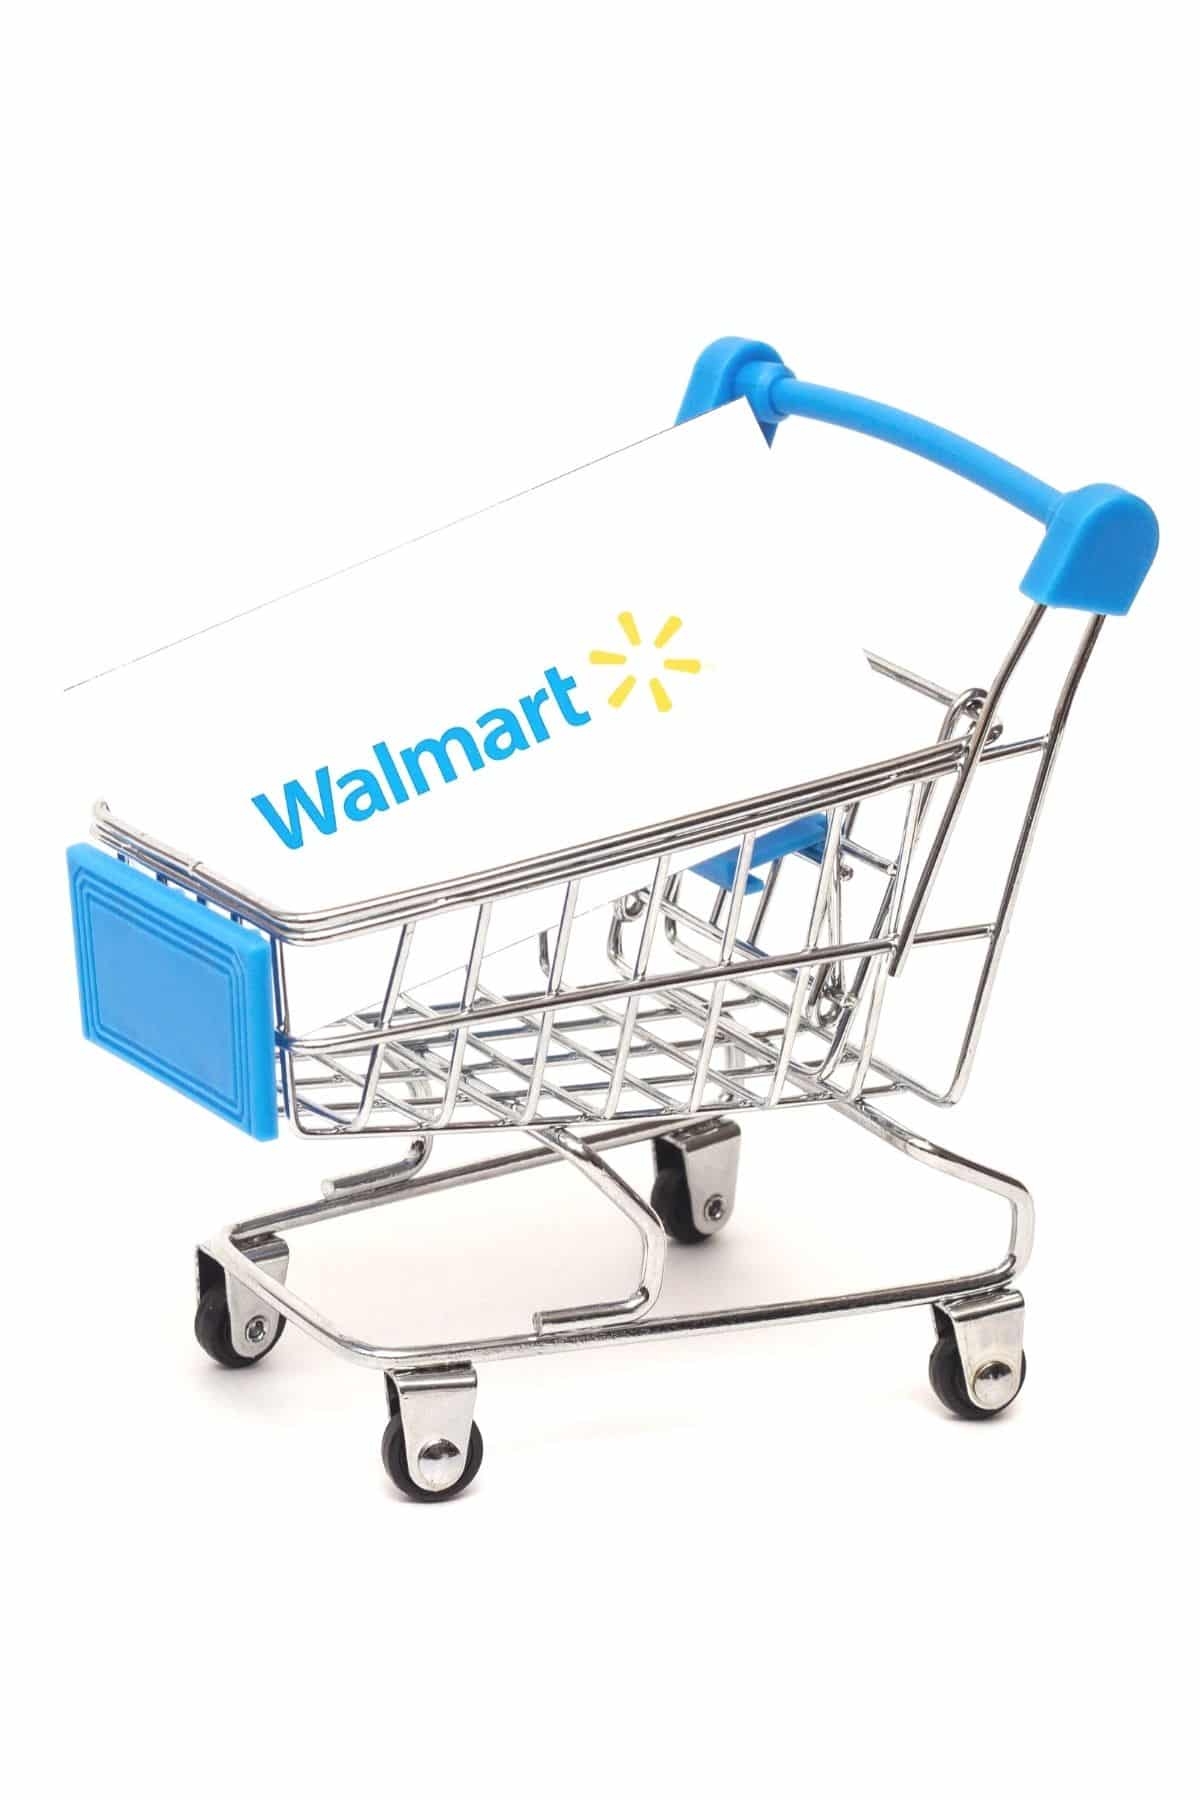 Walmart shopping basket.